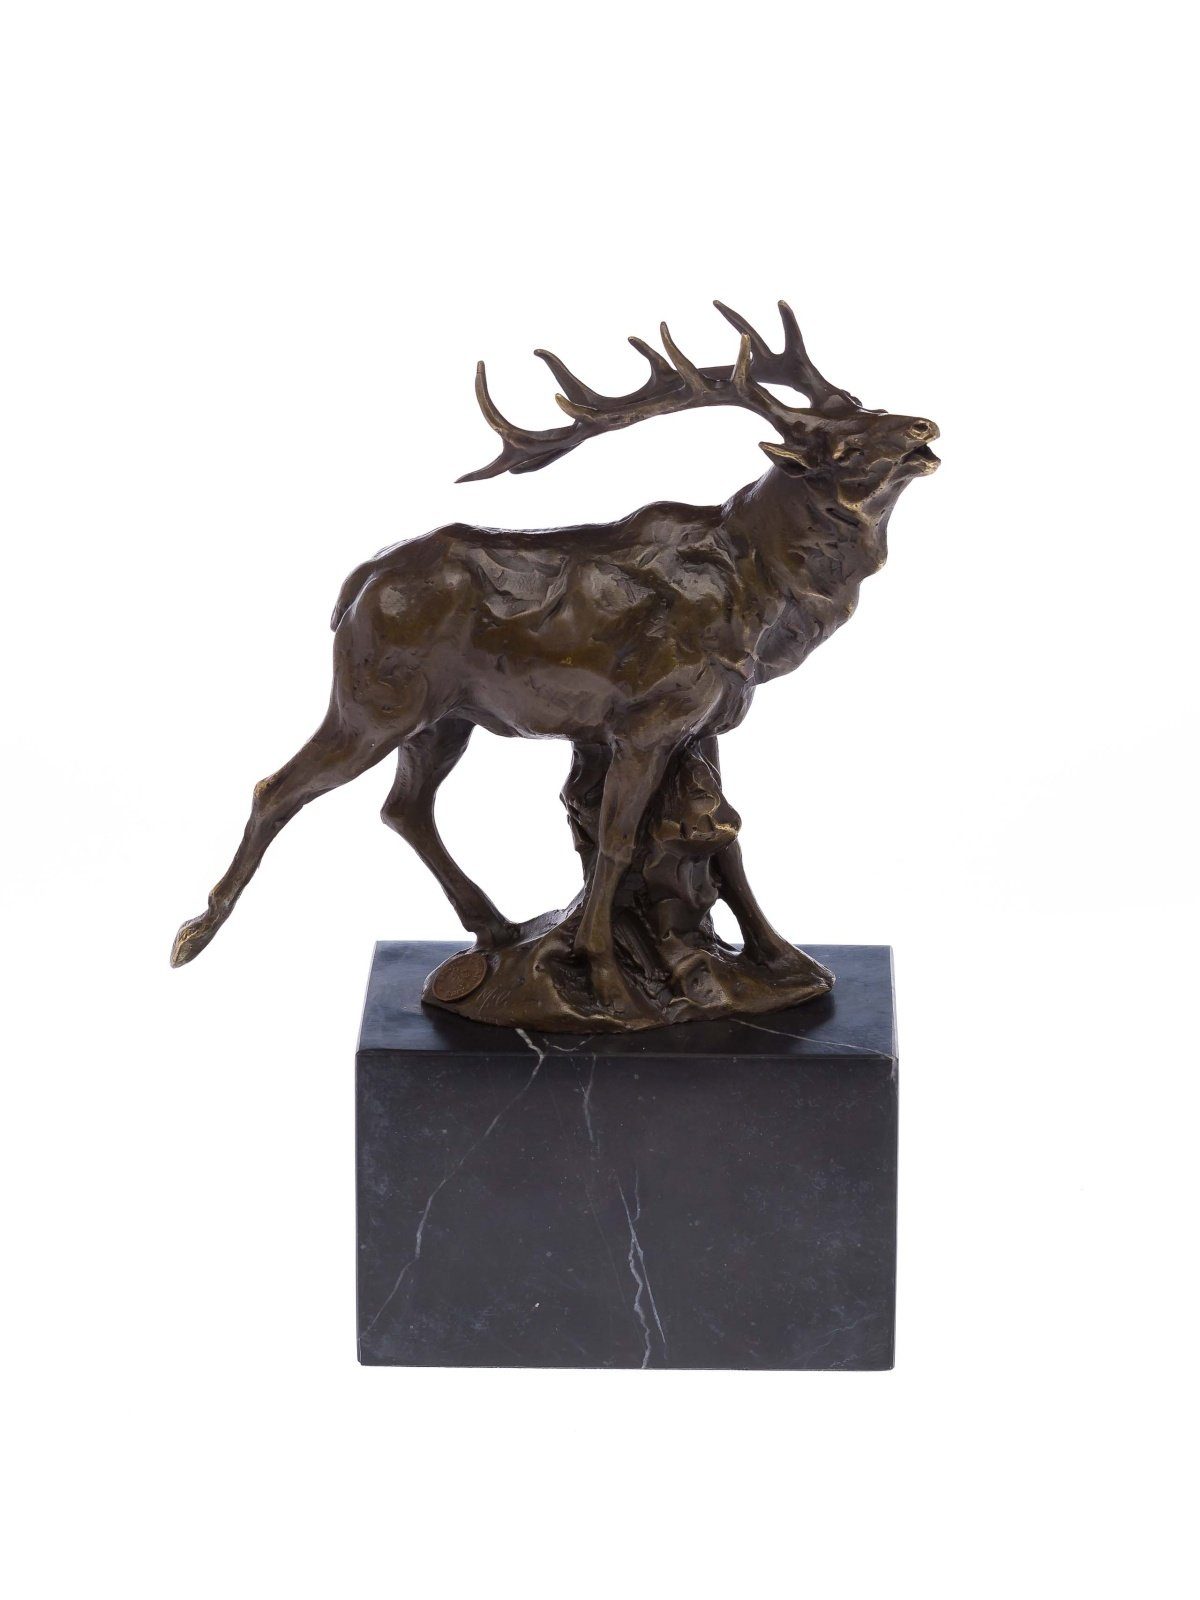 sculp Figur Skulptur Jagd röhrender Bronzeskulptur Bronze Jäger Hirsch Skulptur Aubaho